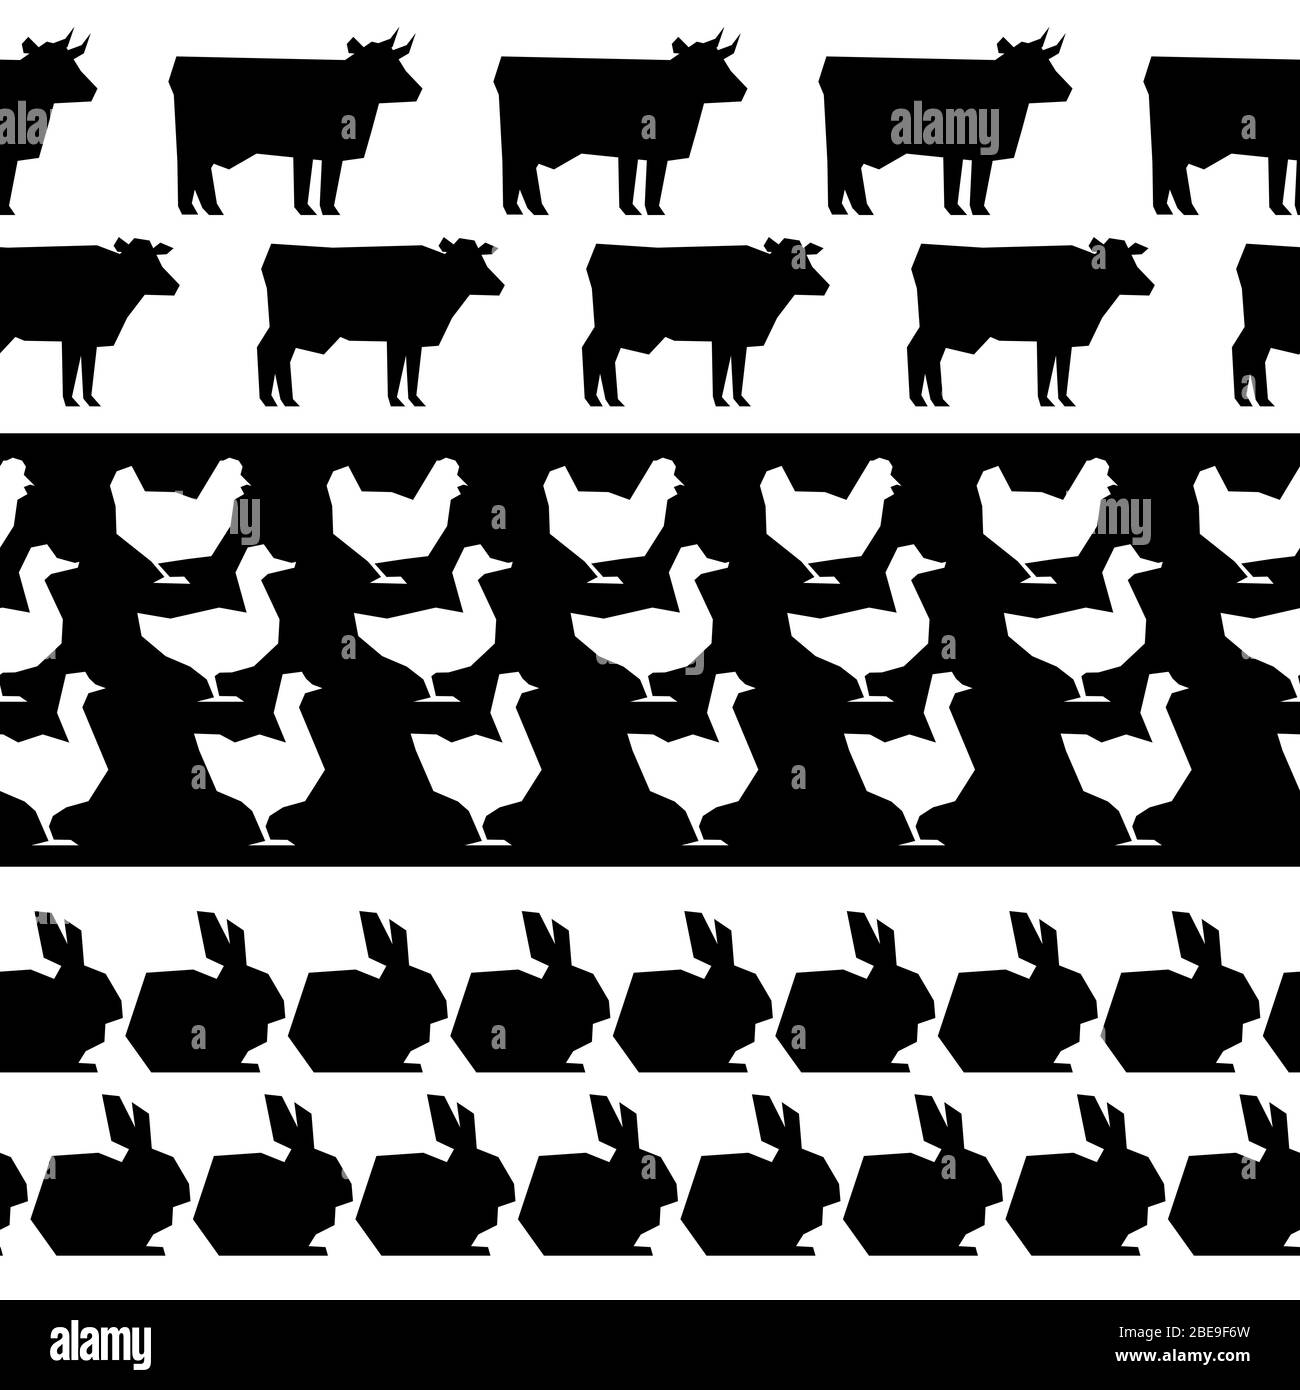 Tiere auf dem Bauernhof Silhouetten nahtlose Grenzen. Schwarz-weiße Silhouette Bauernhof Tier. Vektorgrafik Stock Vektor